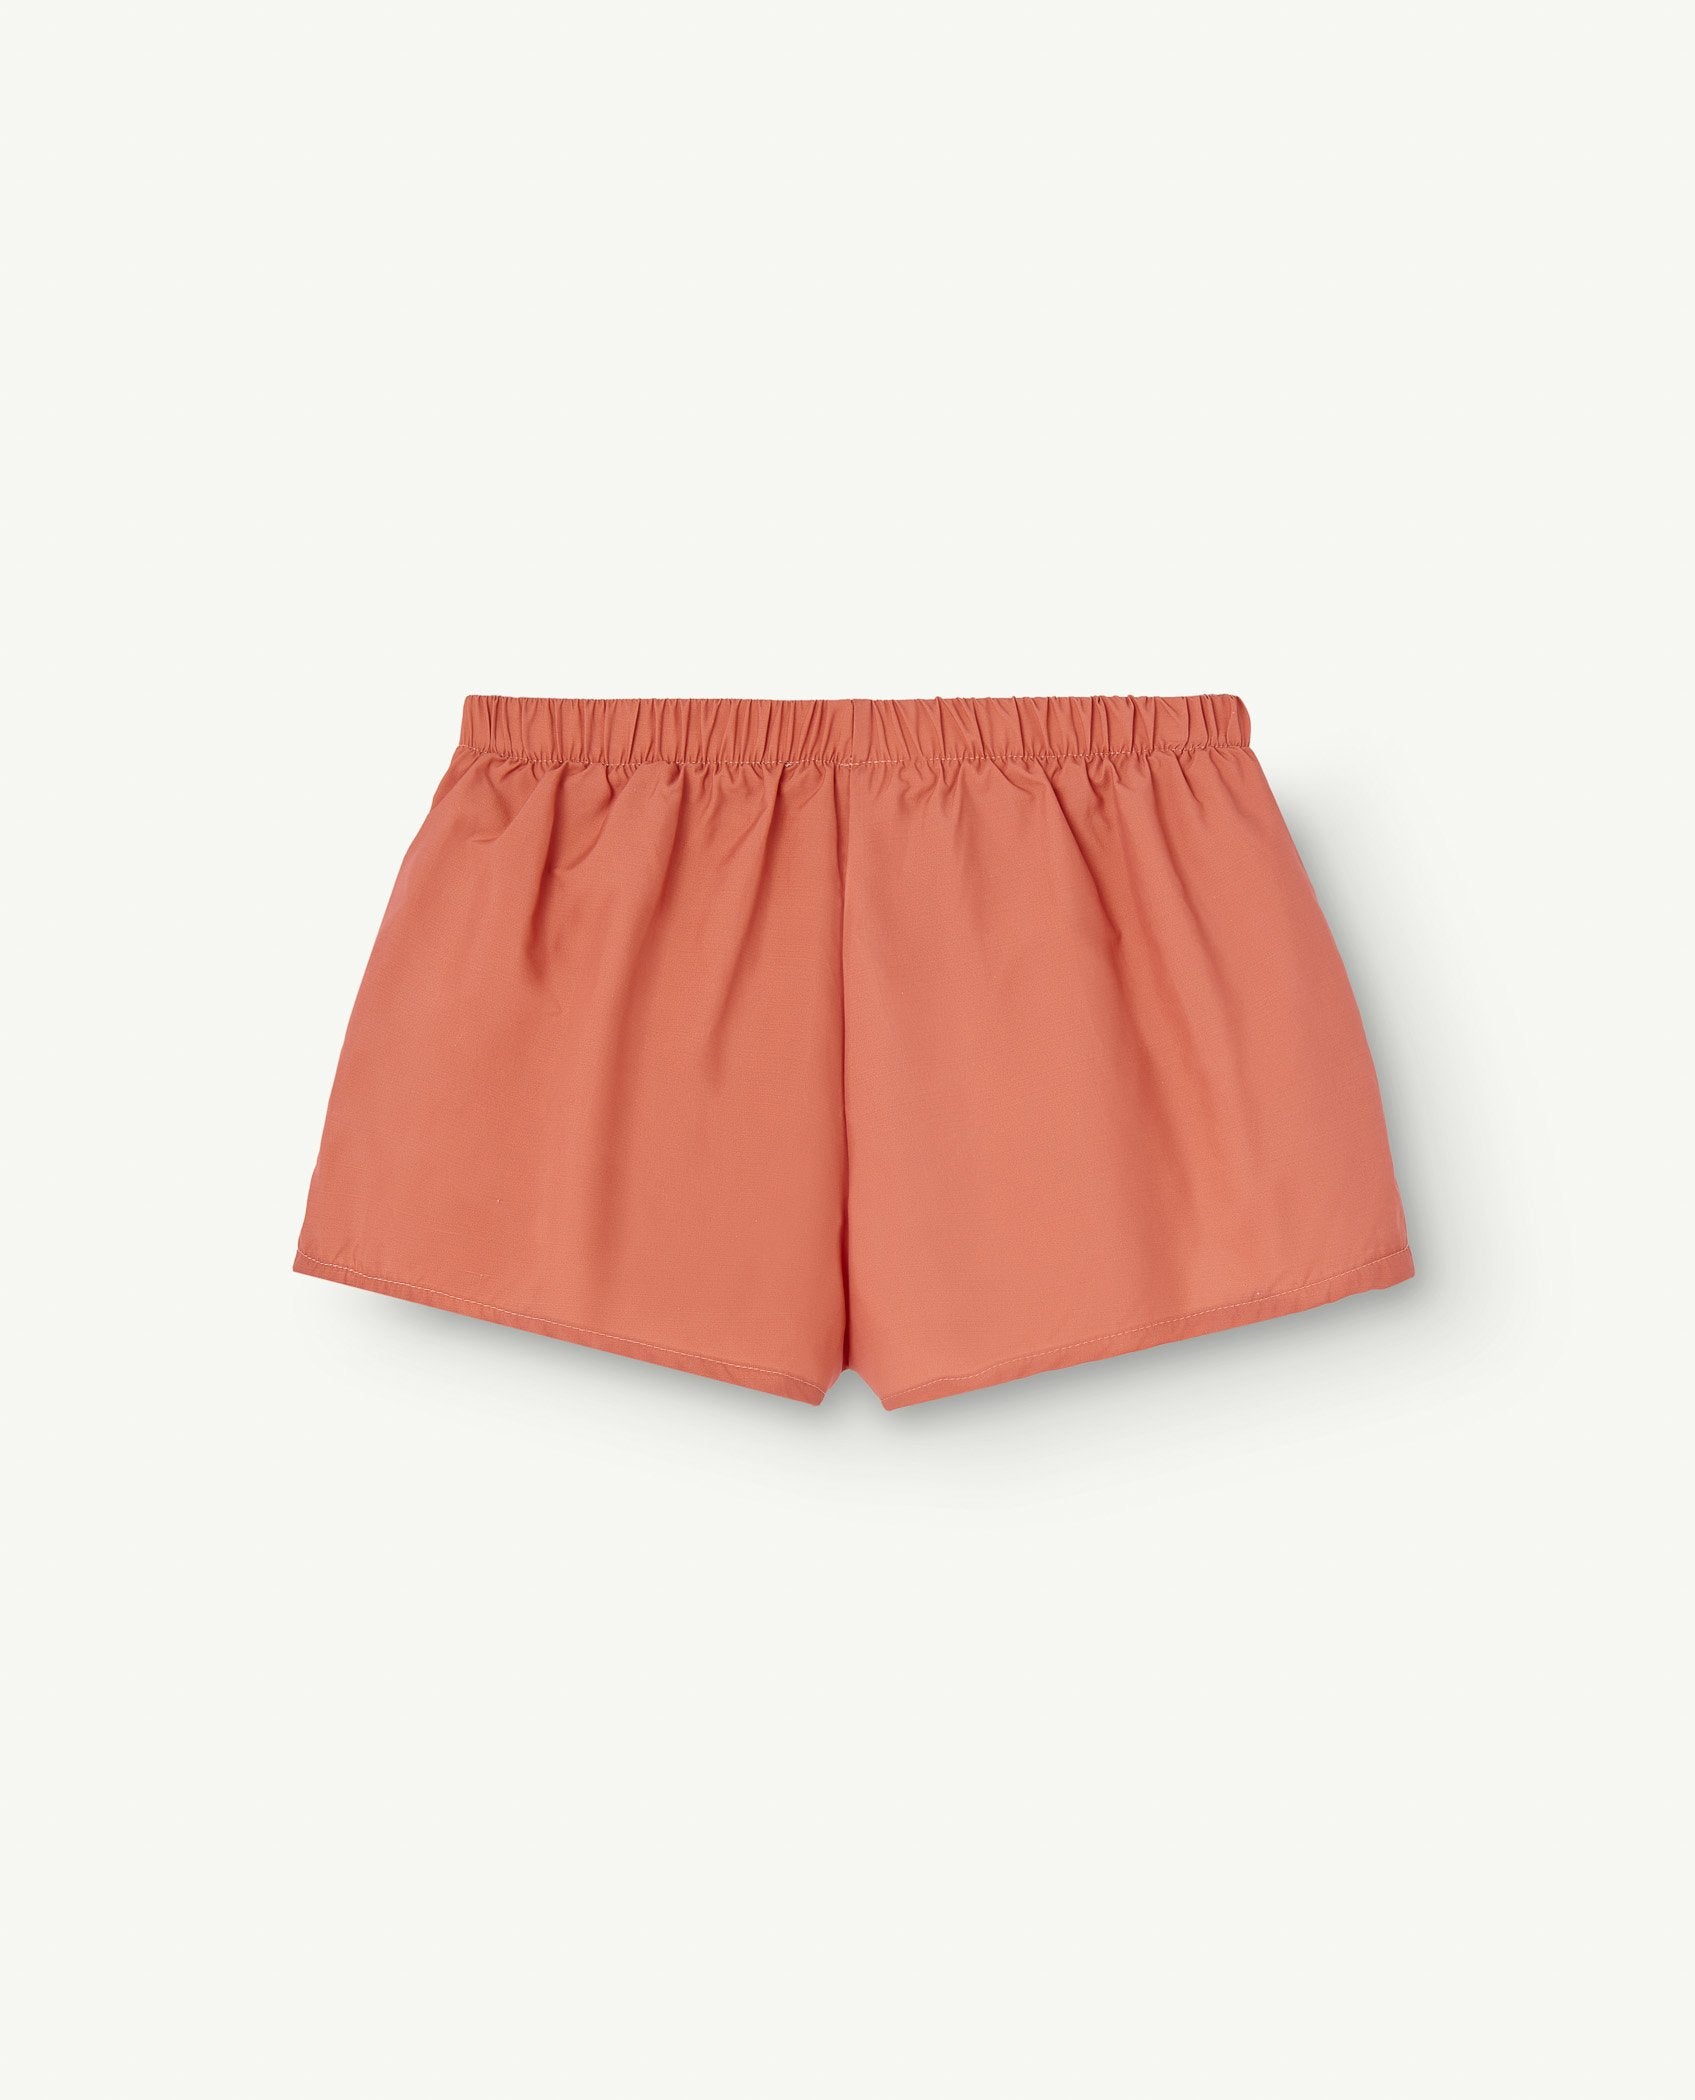 Babar Orange Puppy Swim Shorts PRODUCT BACK